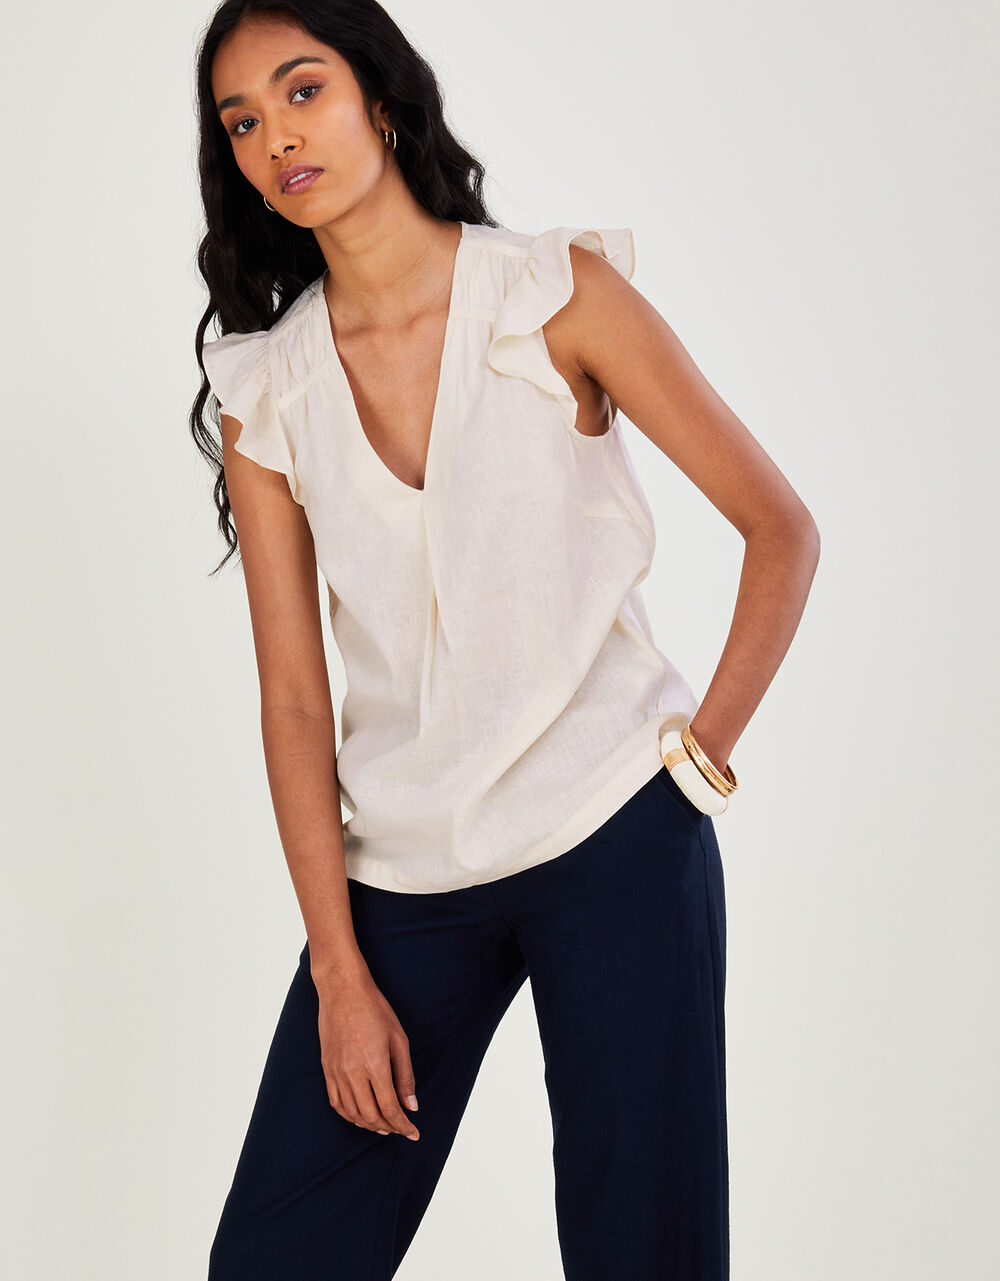 Women Women's Clothing | Lucinda Sleeveless Top in Linen Blend White - LD48254